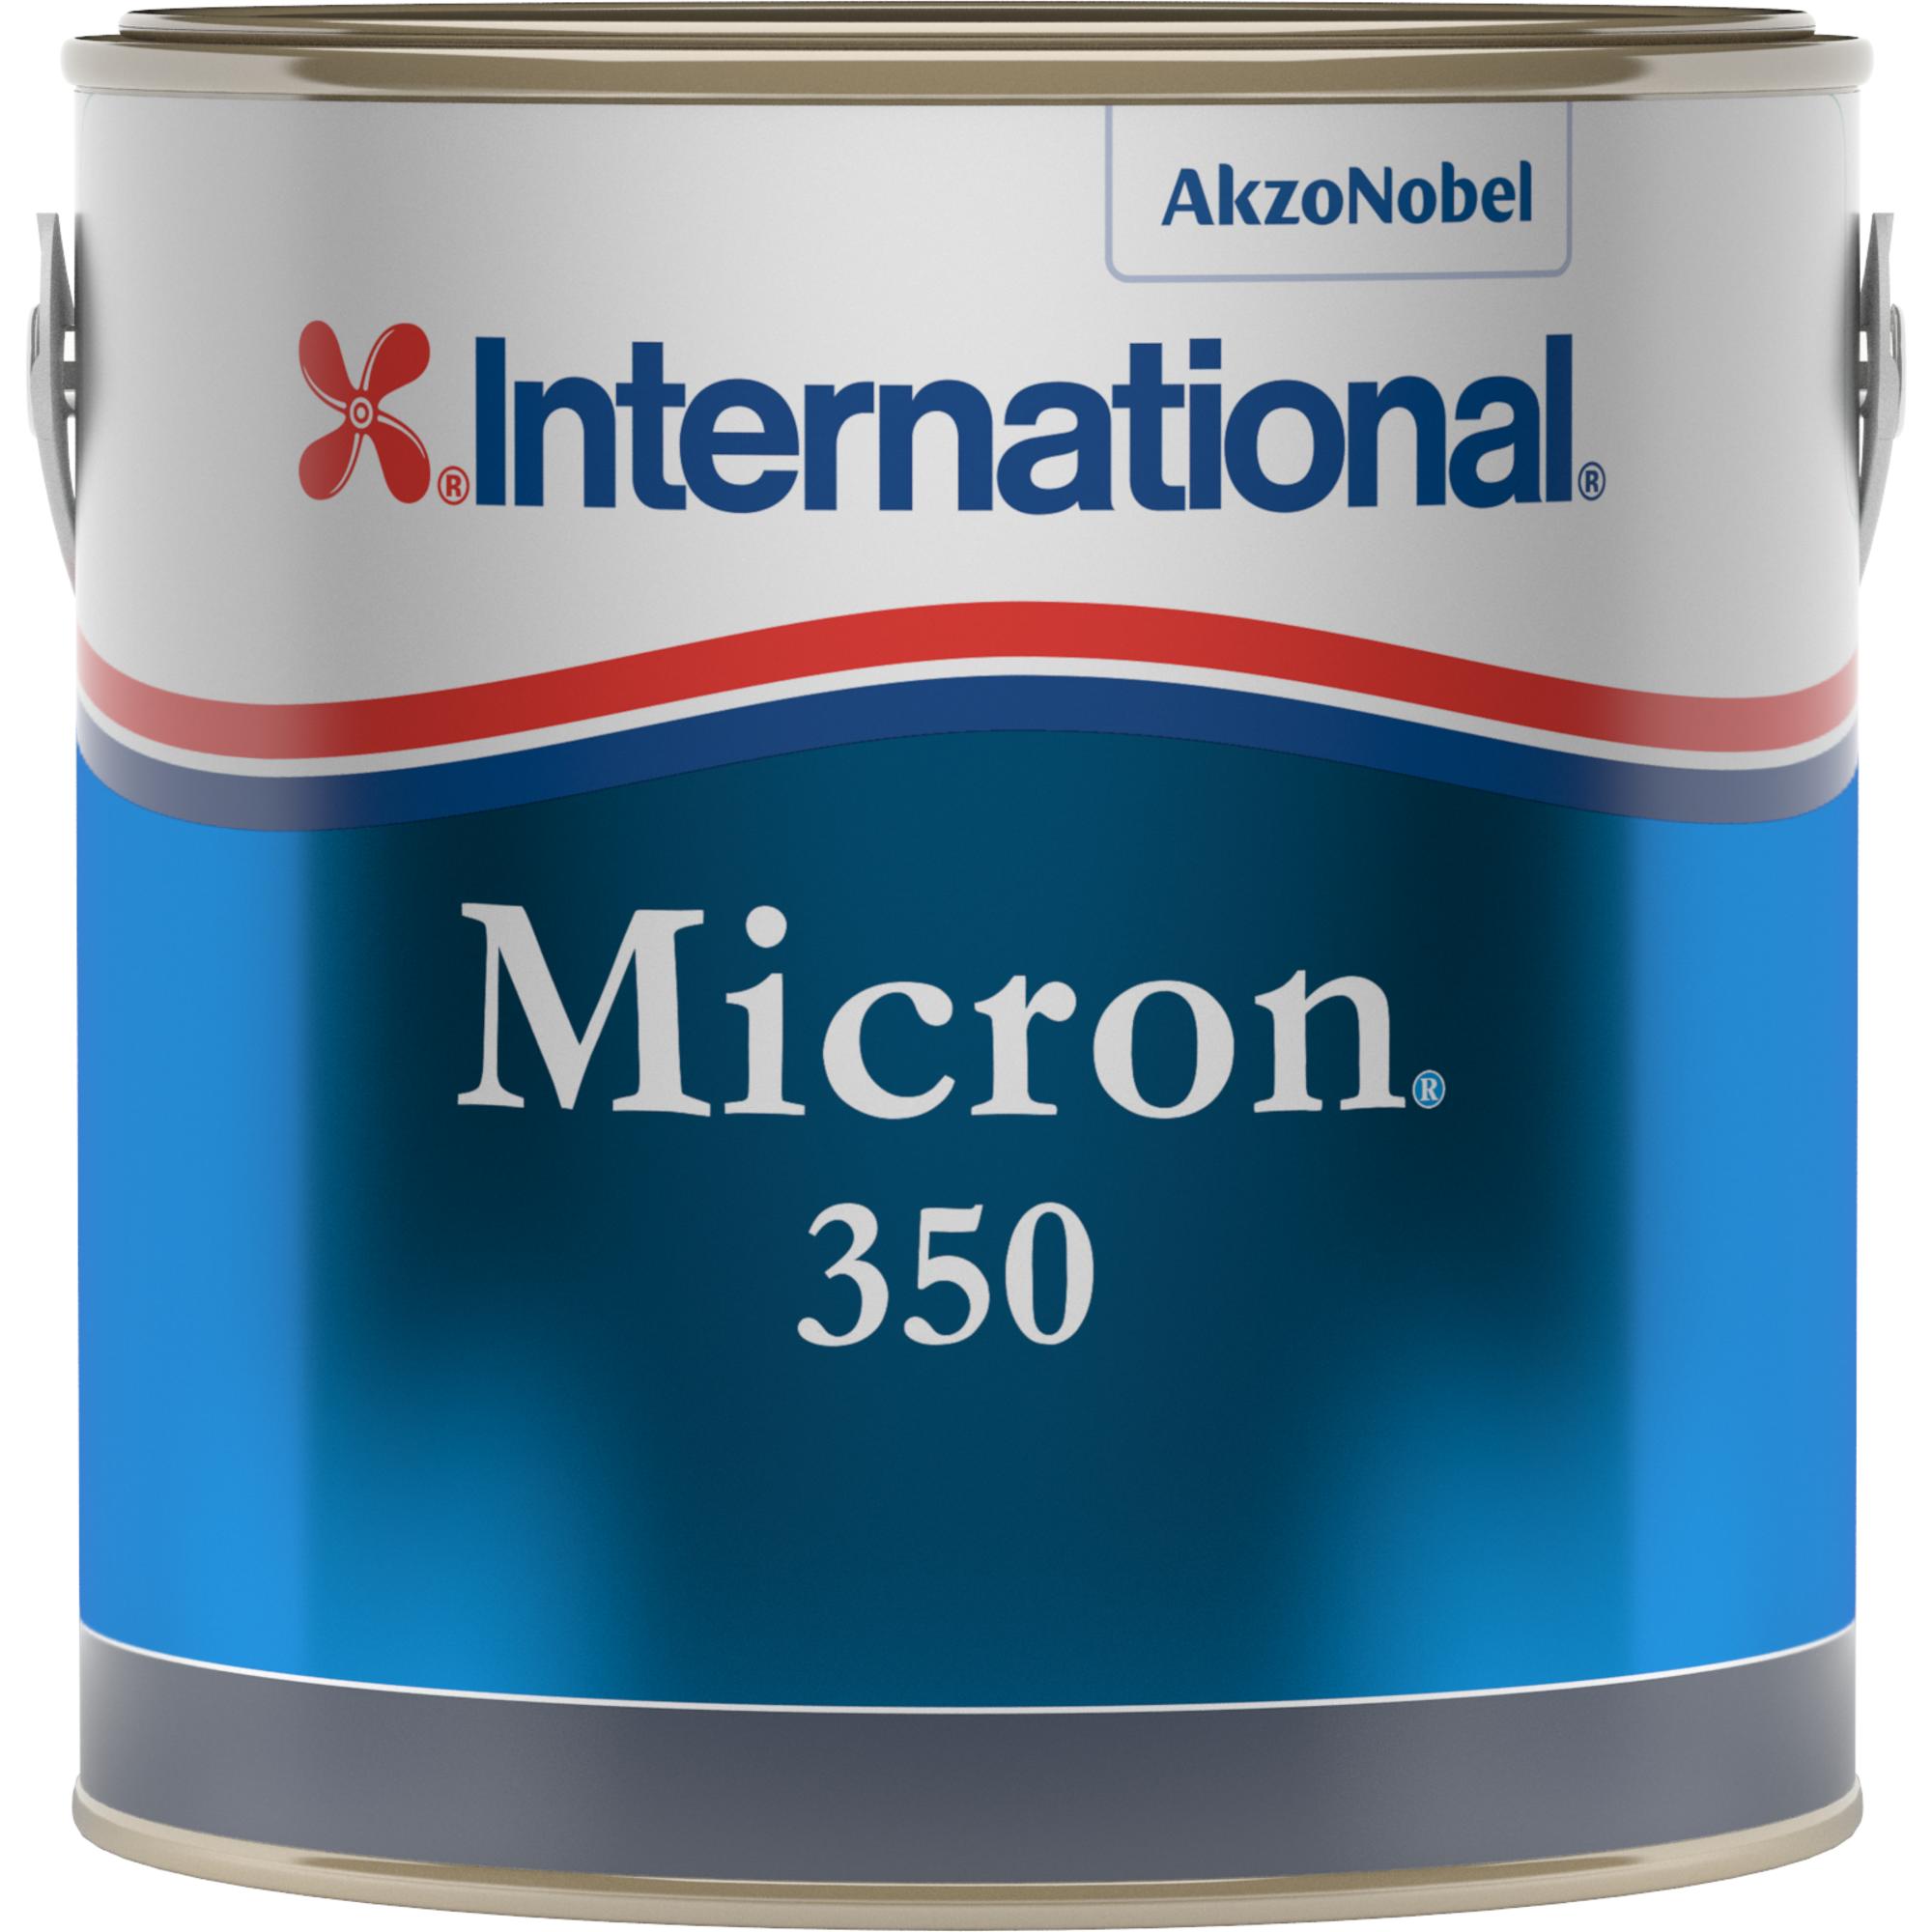 Micron 300 | Micron_350_2.5LT_Clipped.jpg | 1704464440